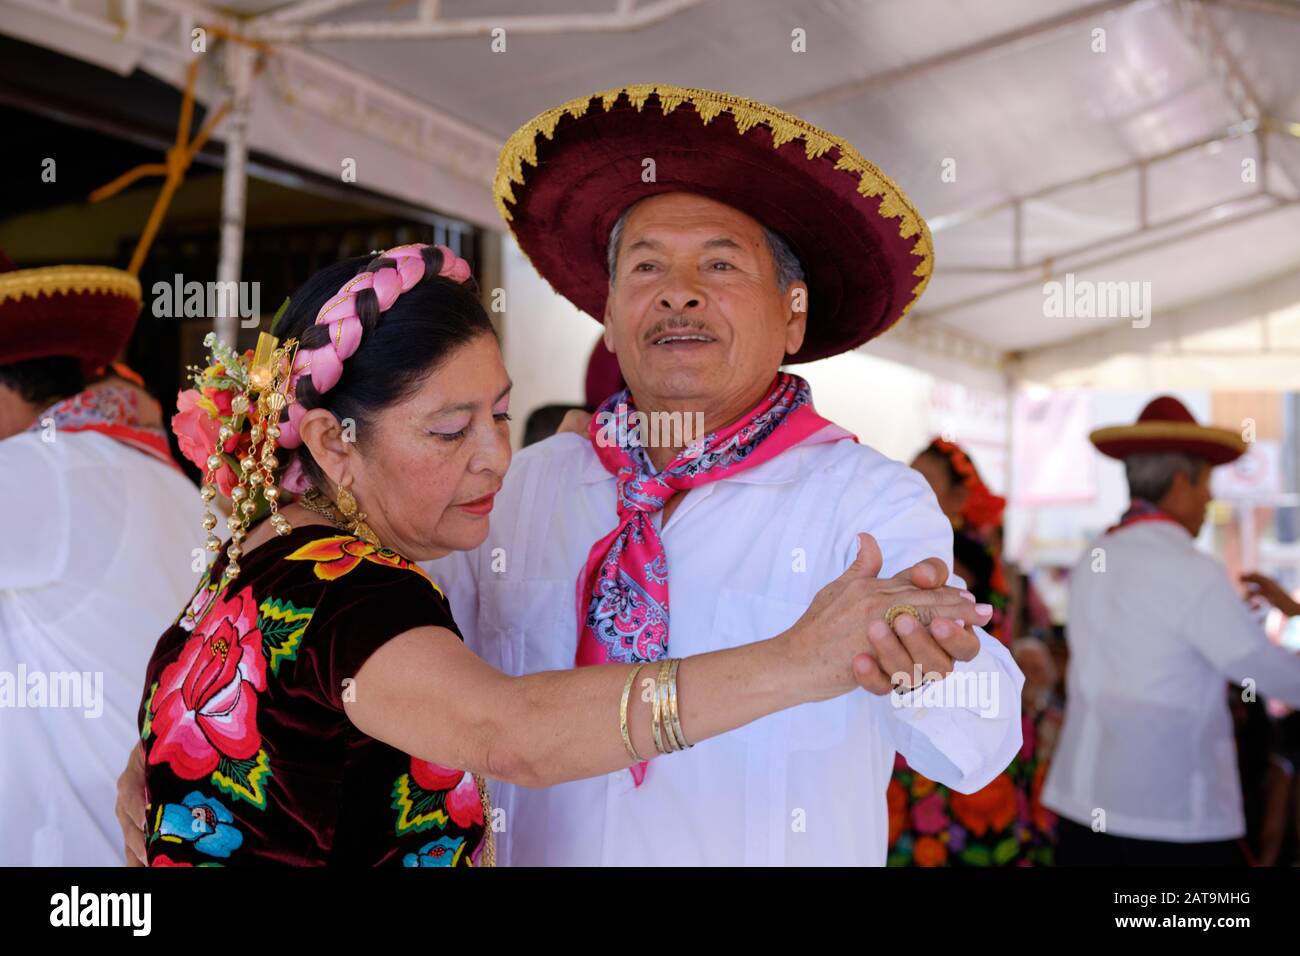 Portrait d'un couple senior de danseurs mexicains traditionnels, se produisant lors d'un événement à Oaxaca Banque D'Images